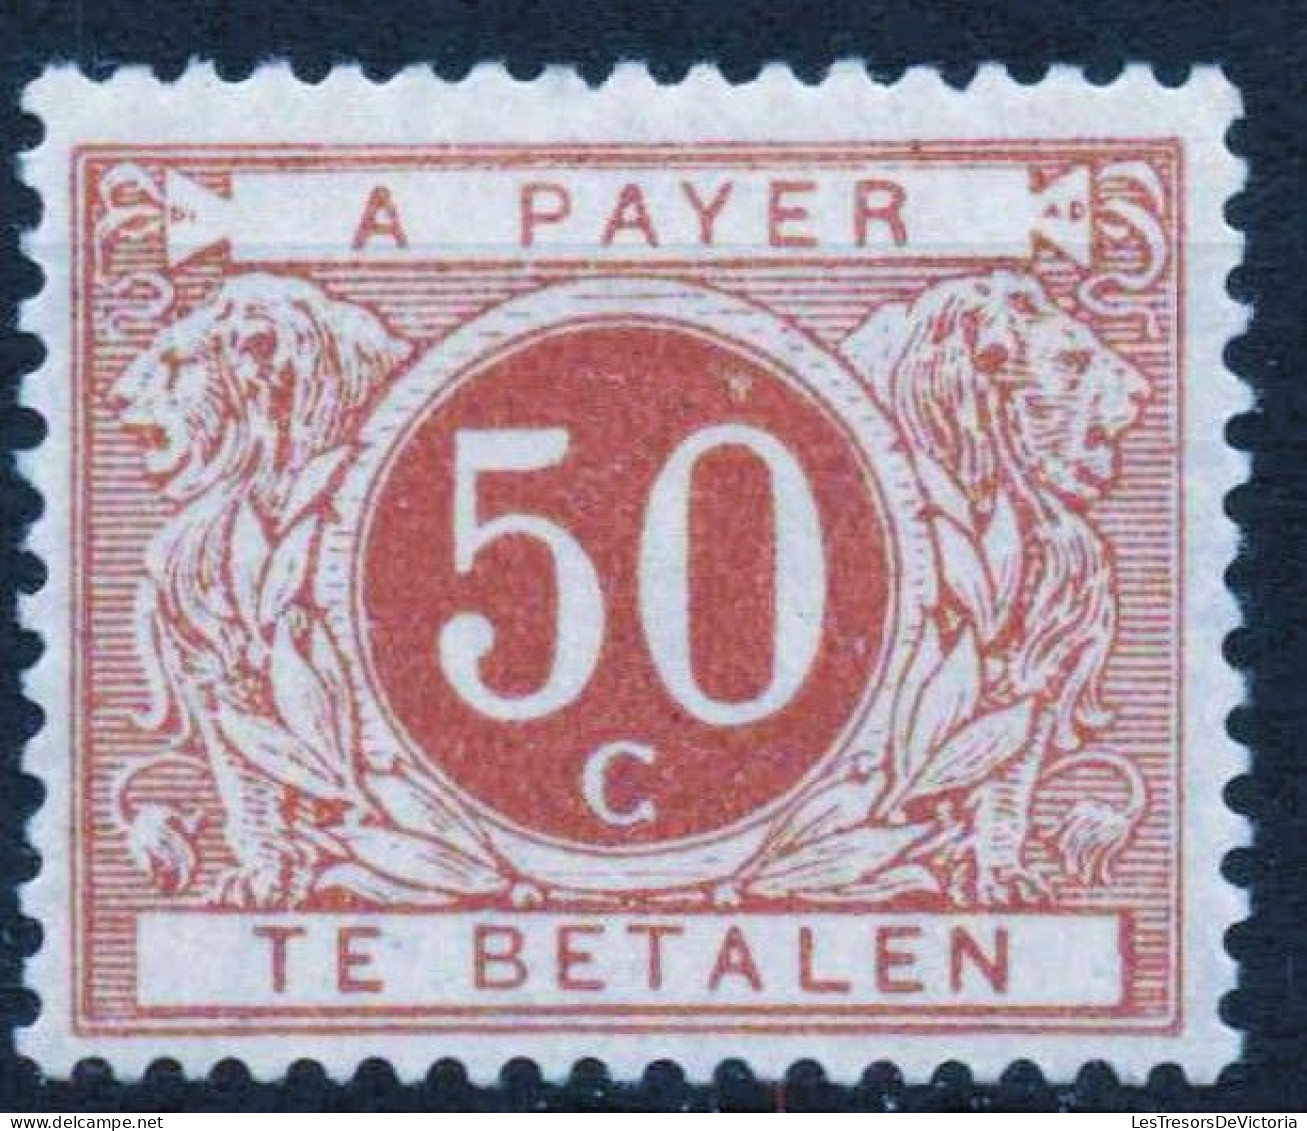 Timbres - Belgique - 1895 - Timbres Taxe - COB TX 8** Ocre Brun - Cote 130 - Sellos